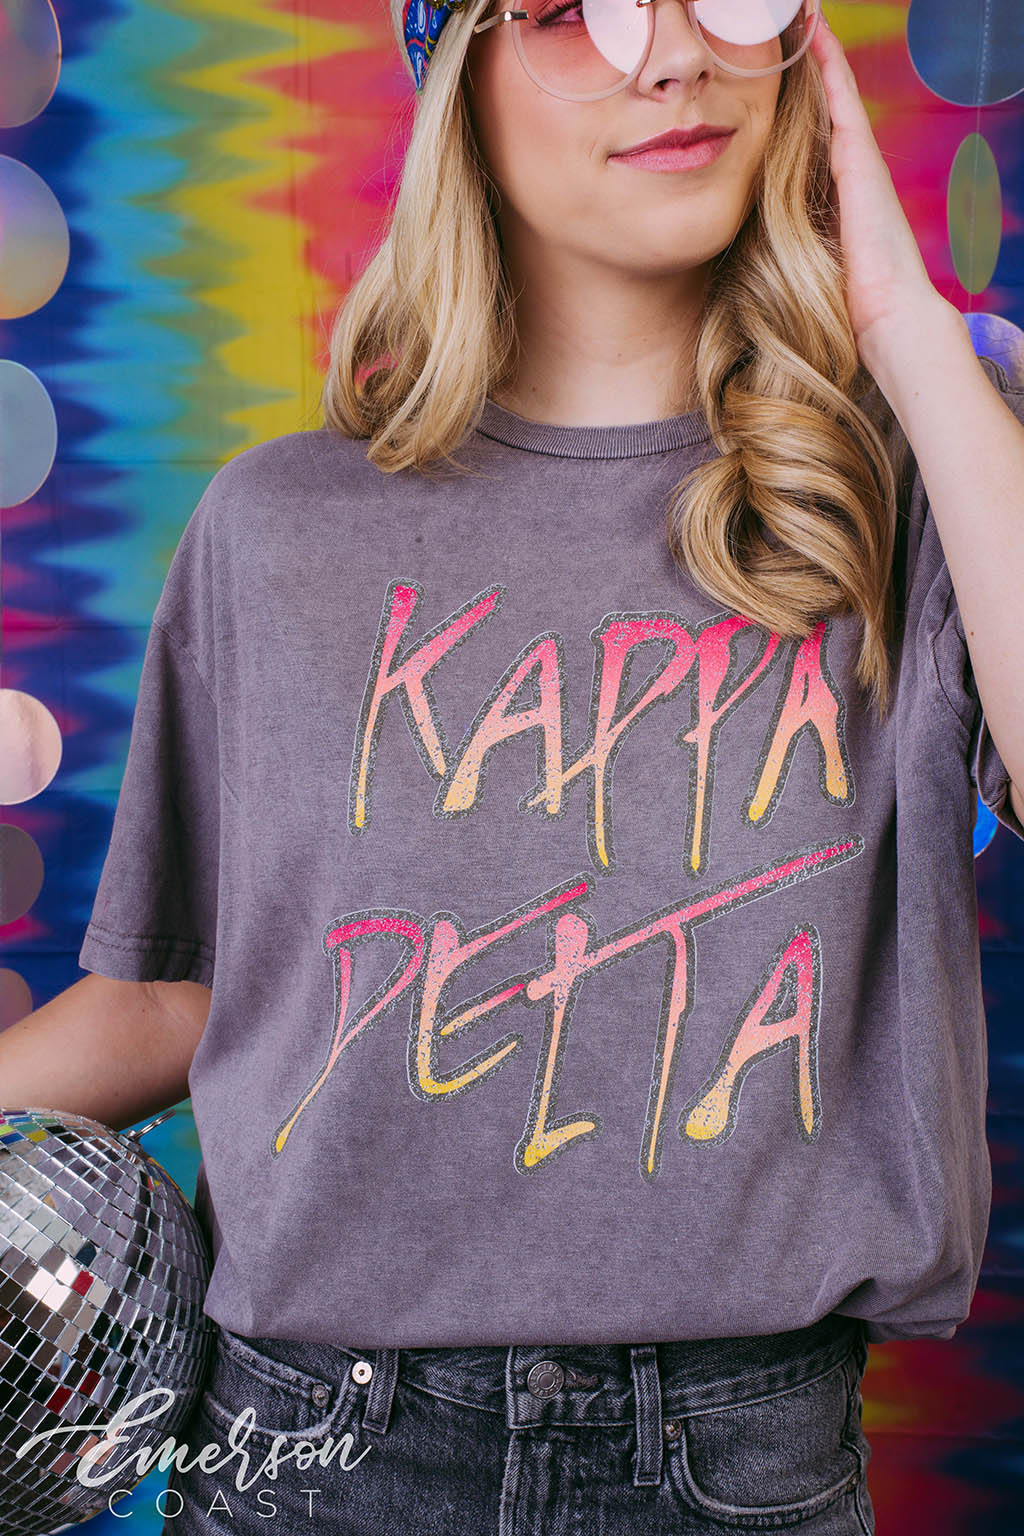 Kappa Delta Graffiti Bid Day T-Shirt